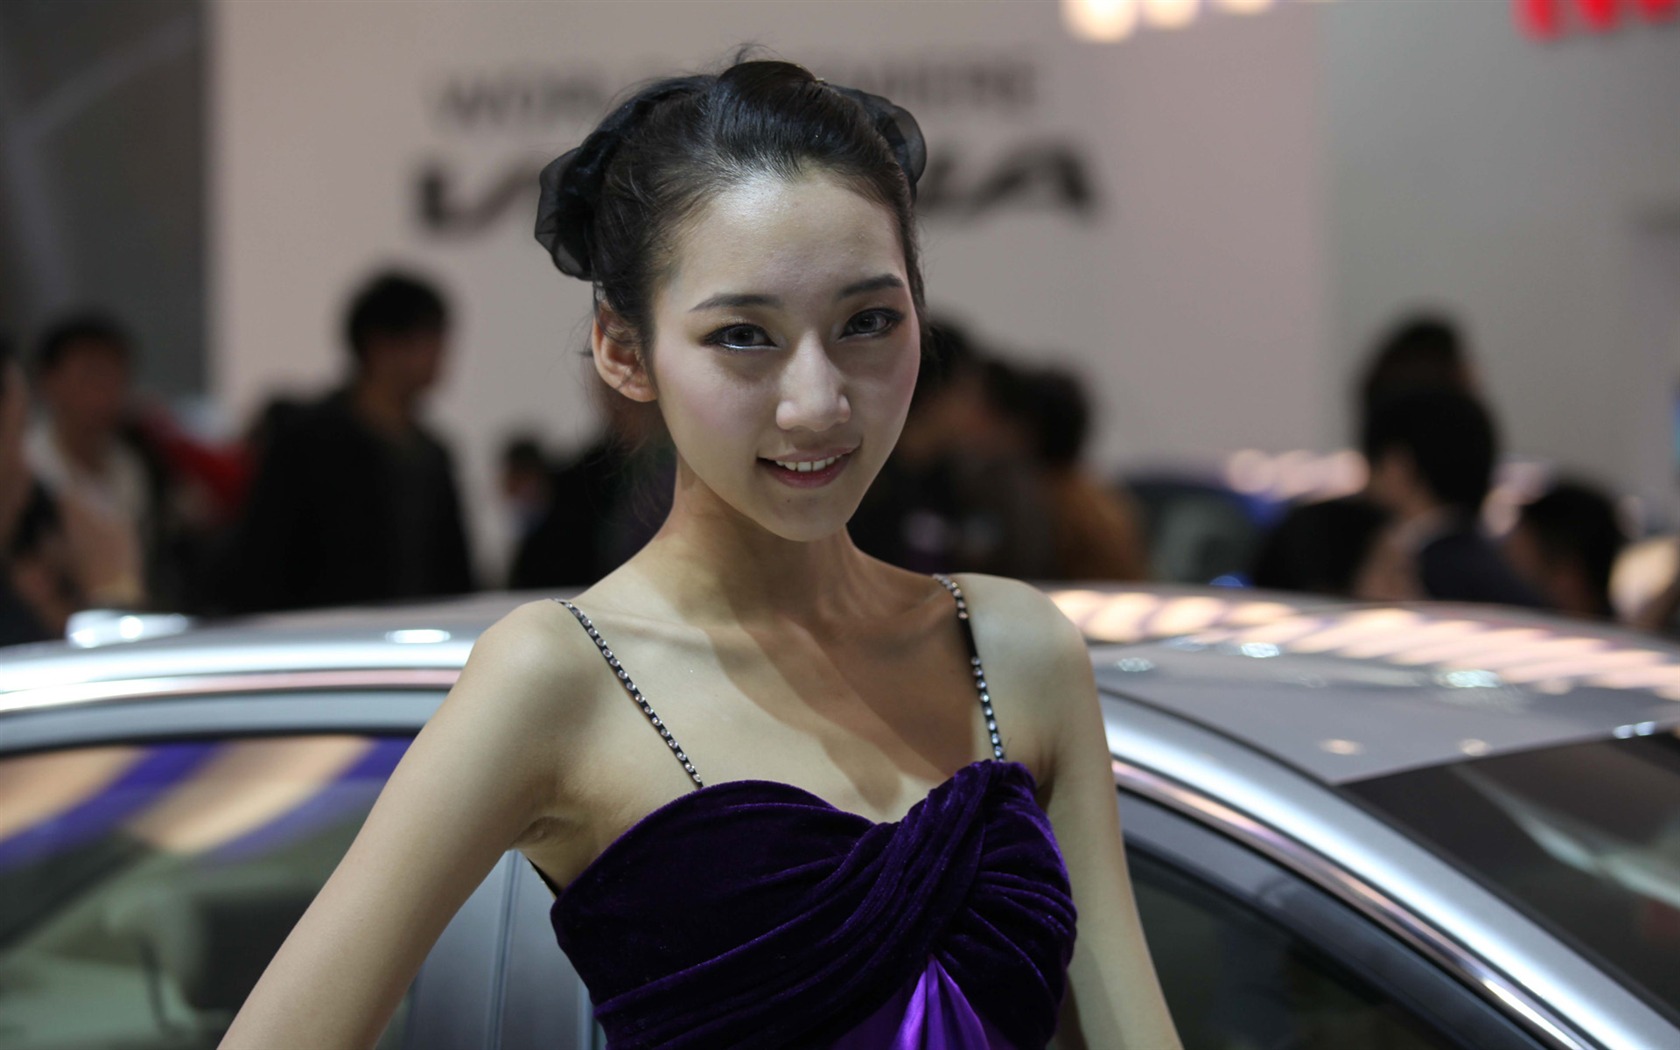 2010 v Pekingu Mezinárodním autosalonu krása (1) (vítr honí mraky práce) #21 - 1680x1050